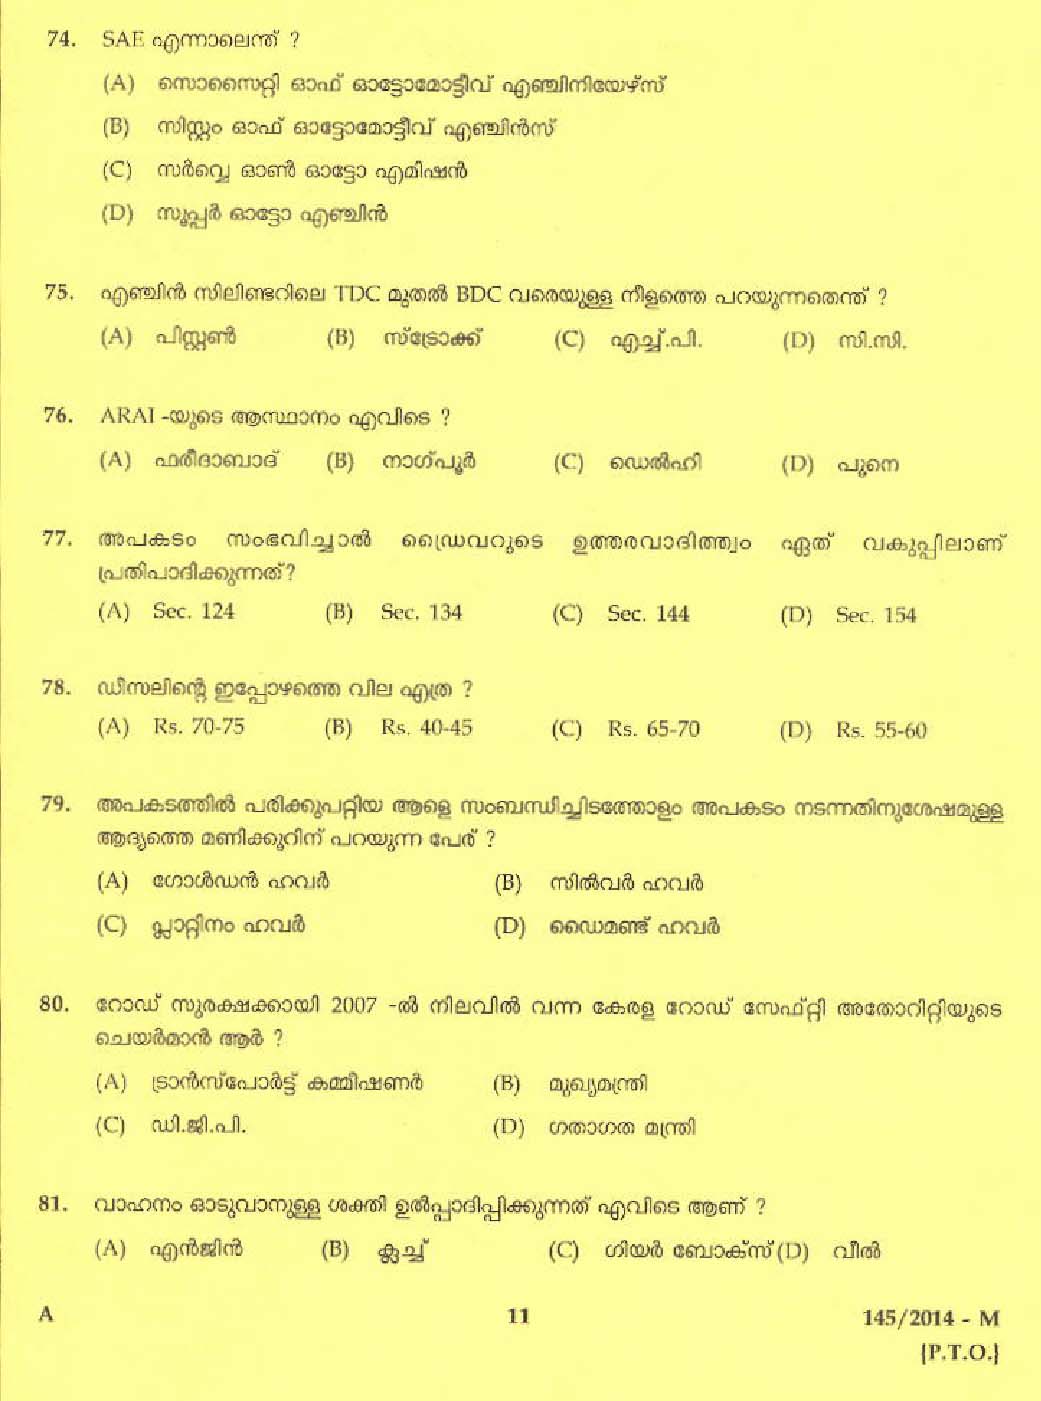 Kerala PSC Driver Grade II Exam 2014 Question Paper Code 1452014 M 9